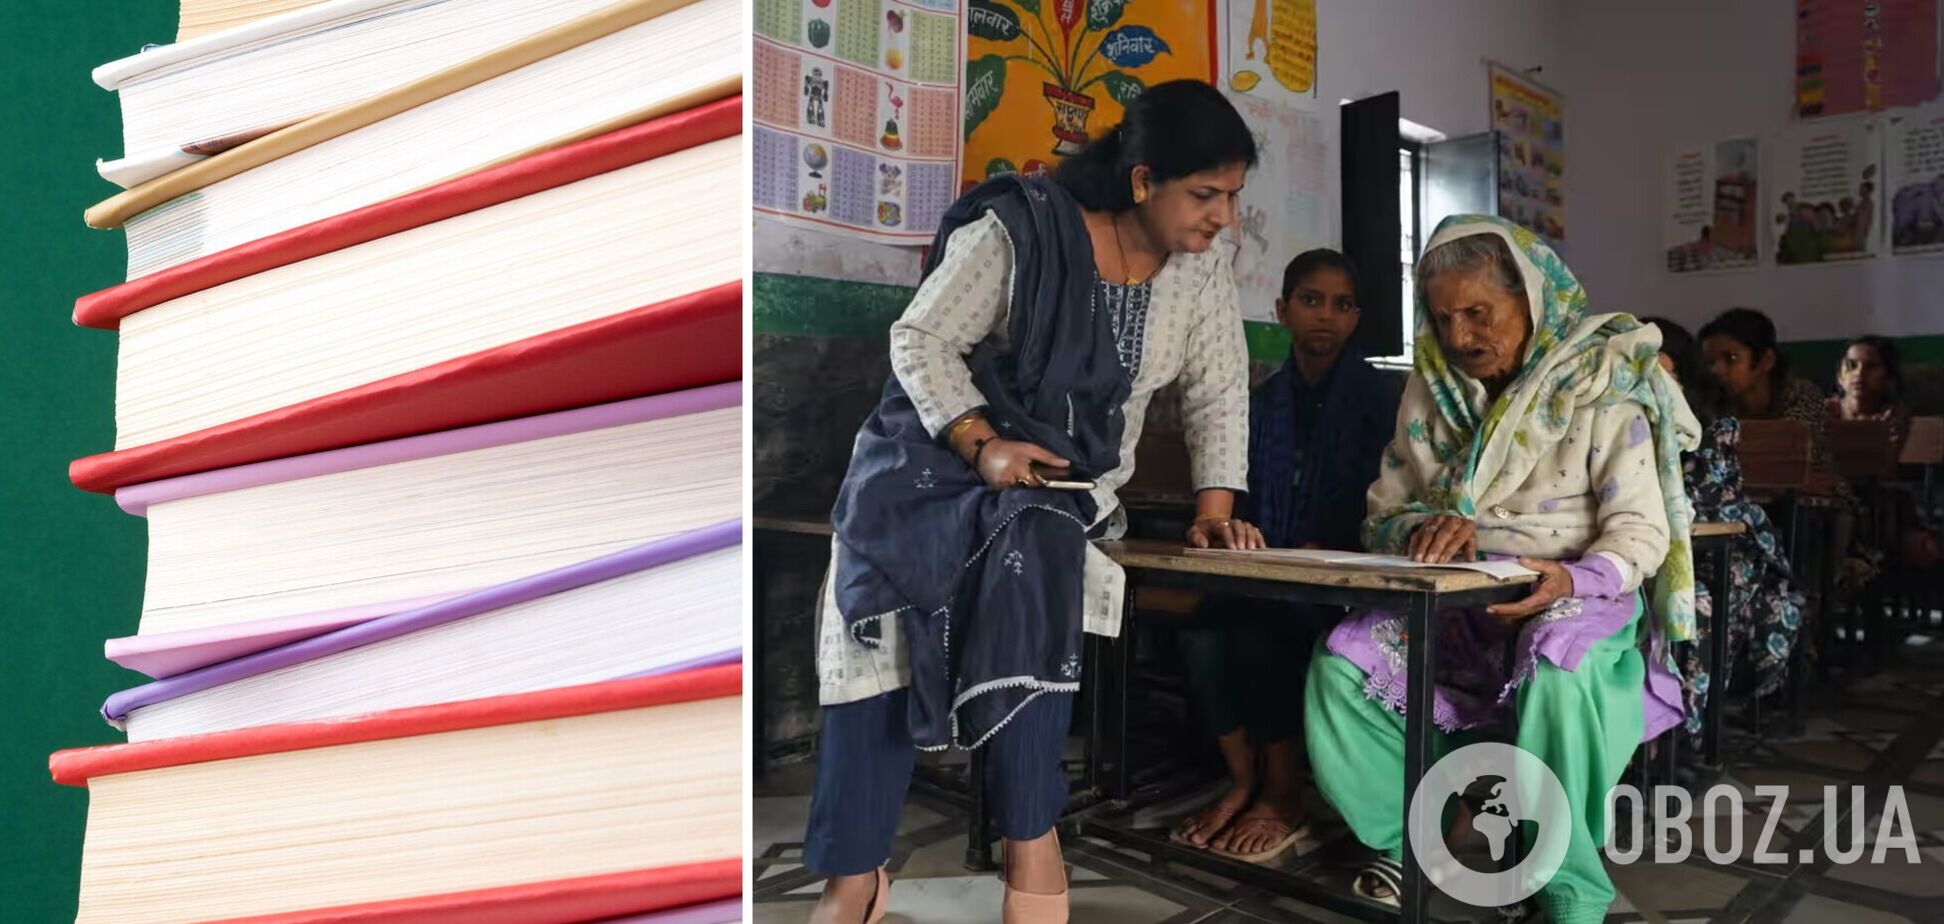 92-летняя бабушка стала старейшей ученицей начальной школы в Индии: она уже научилась читать и писать